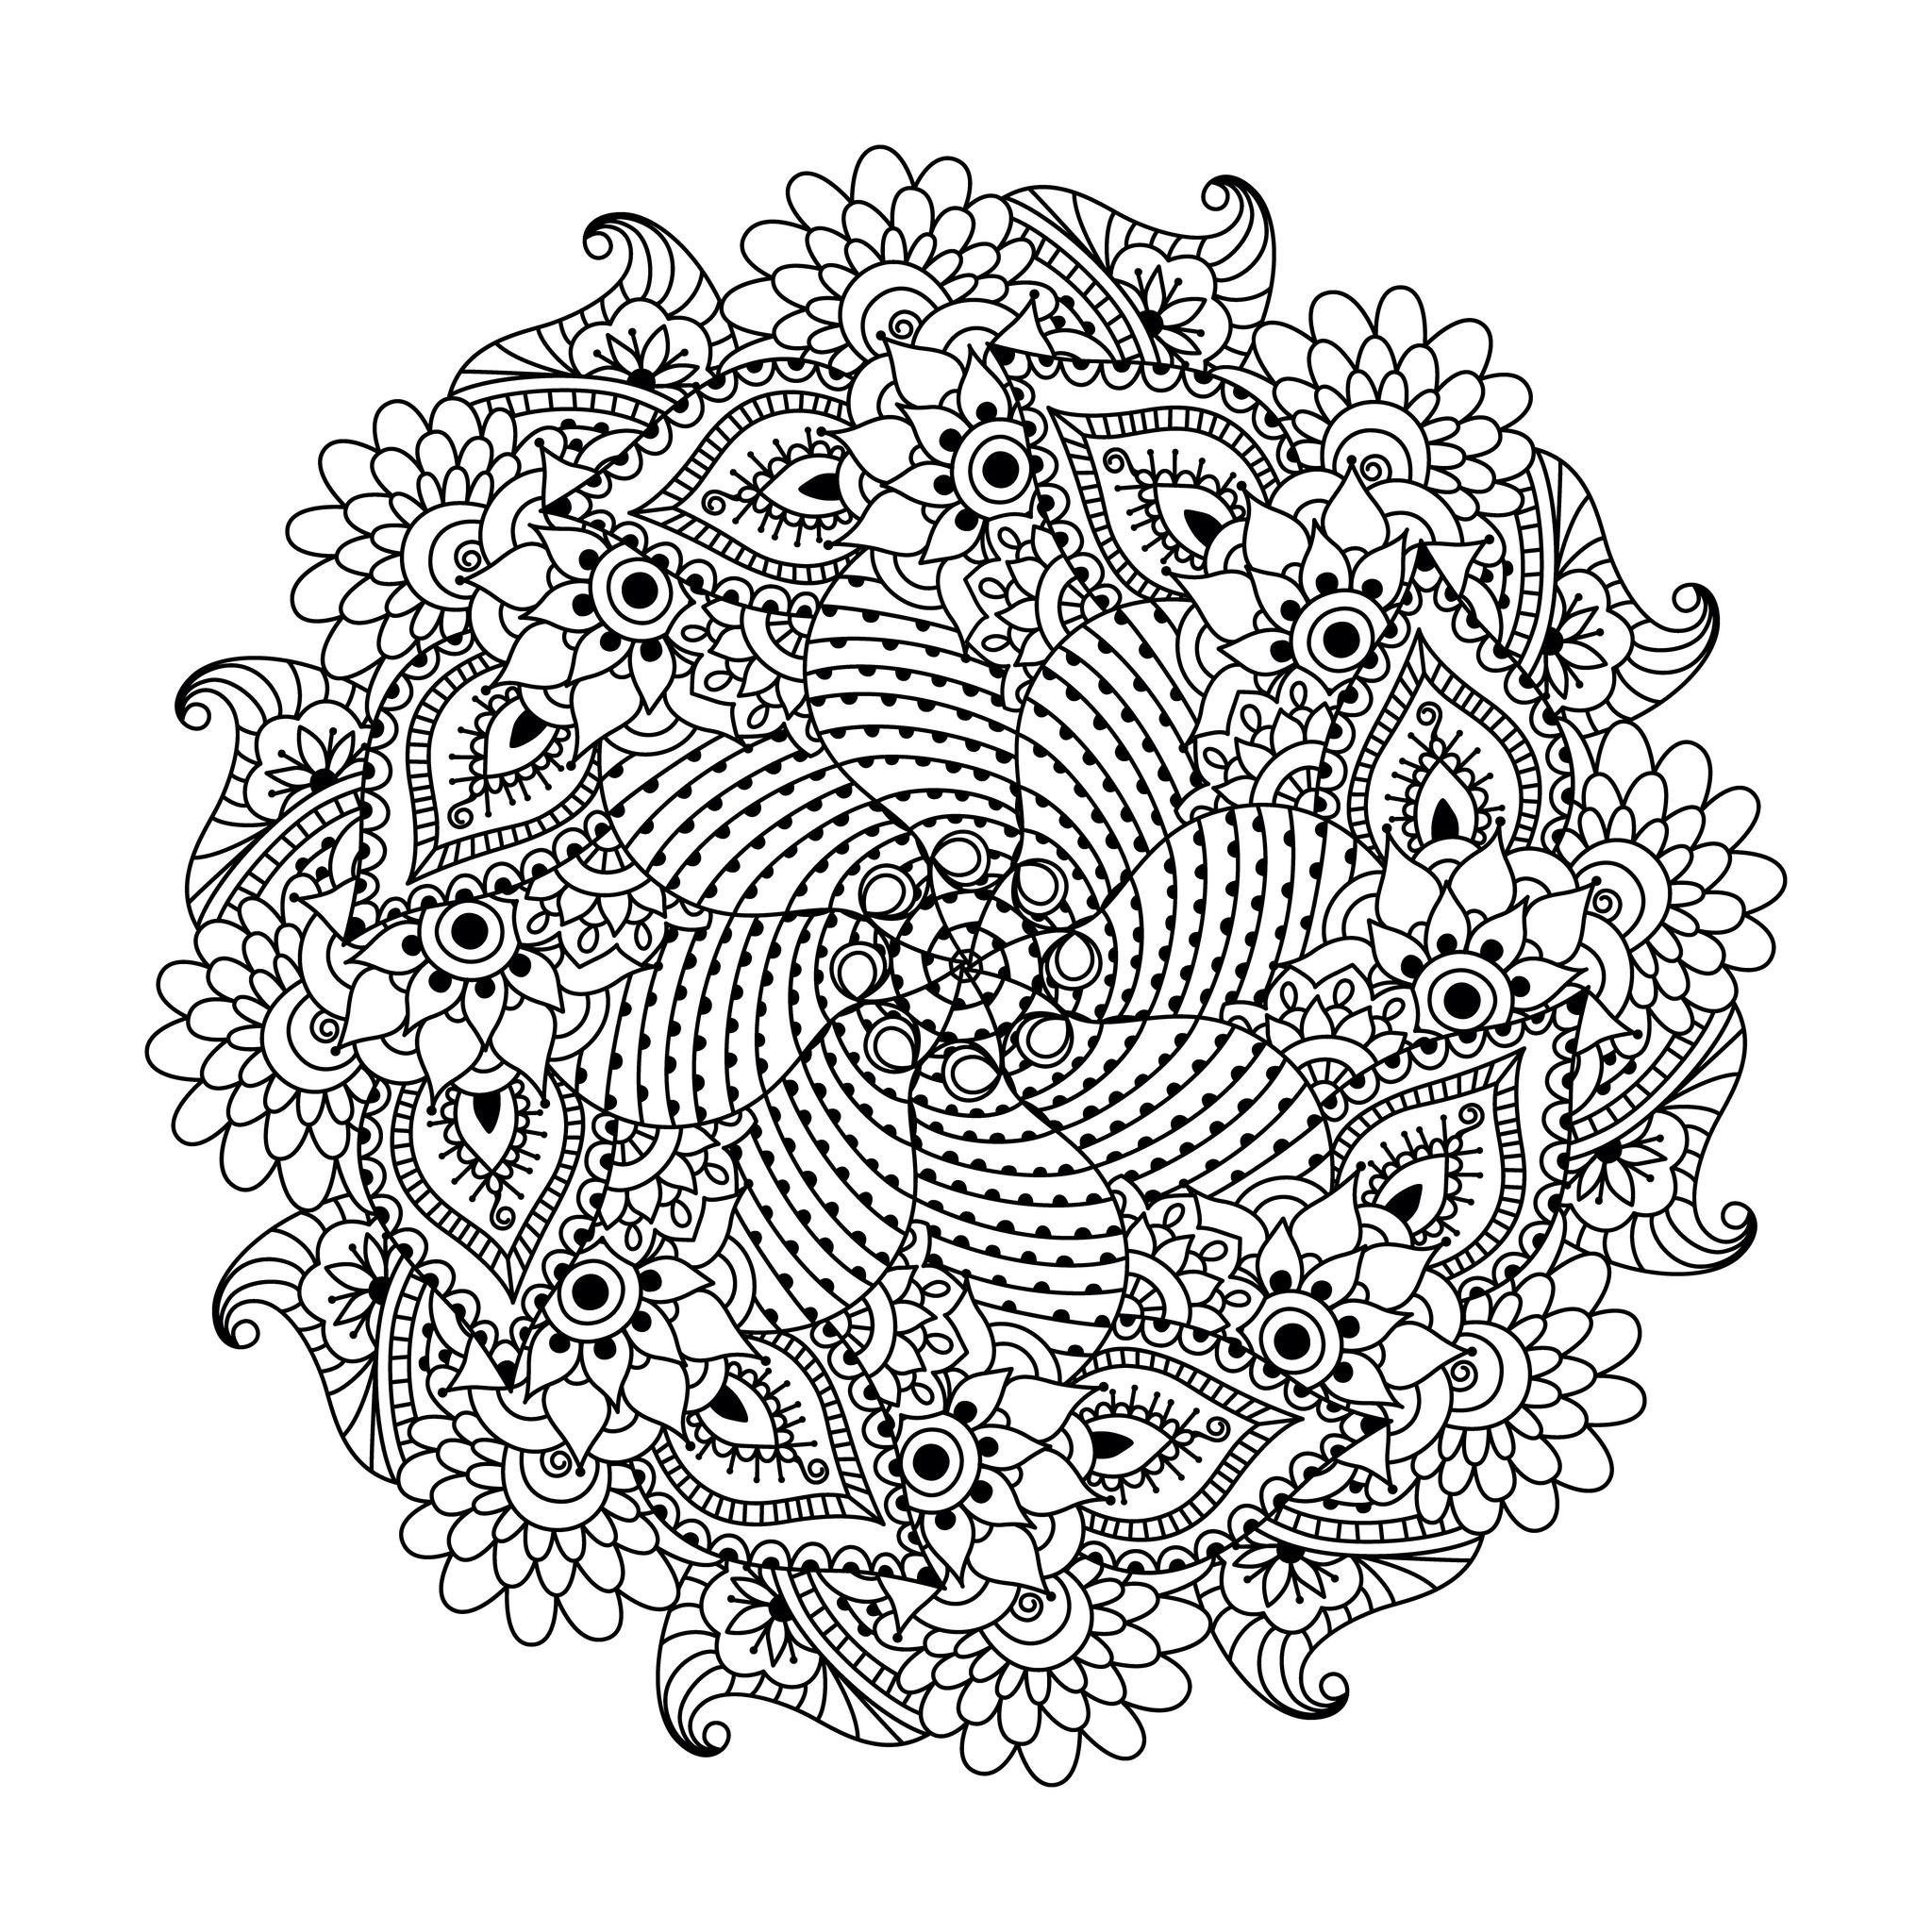 Beaucoup de petits détails et de zones assez réduites, pour un Mandala symétrique au final très original et harmonieux.